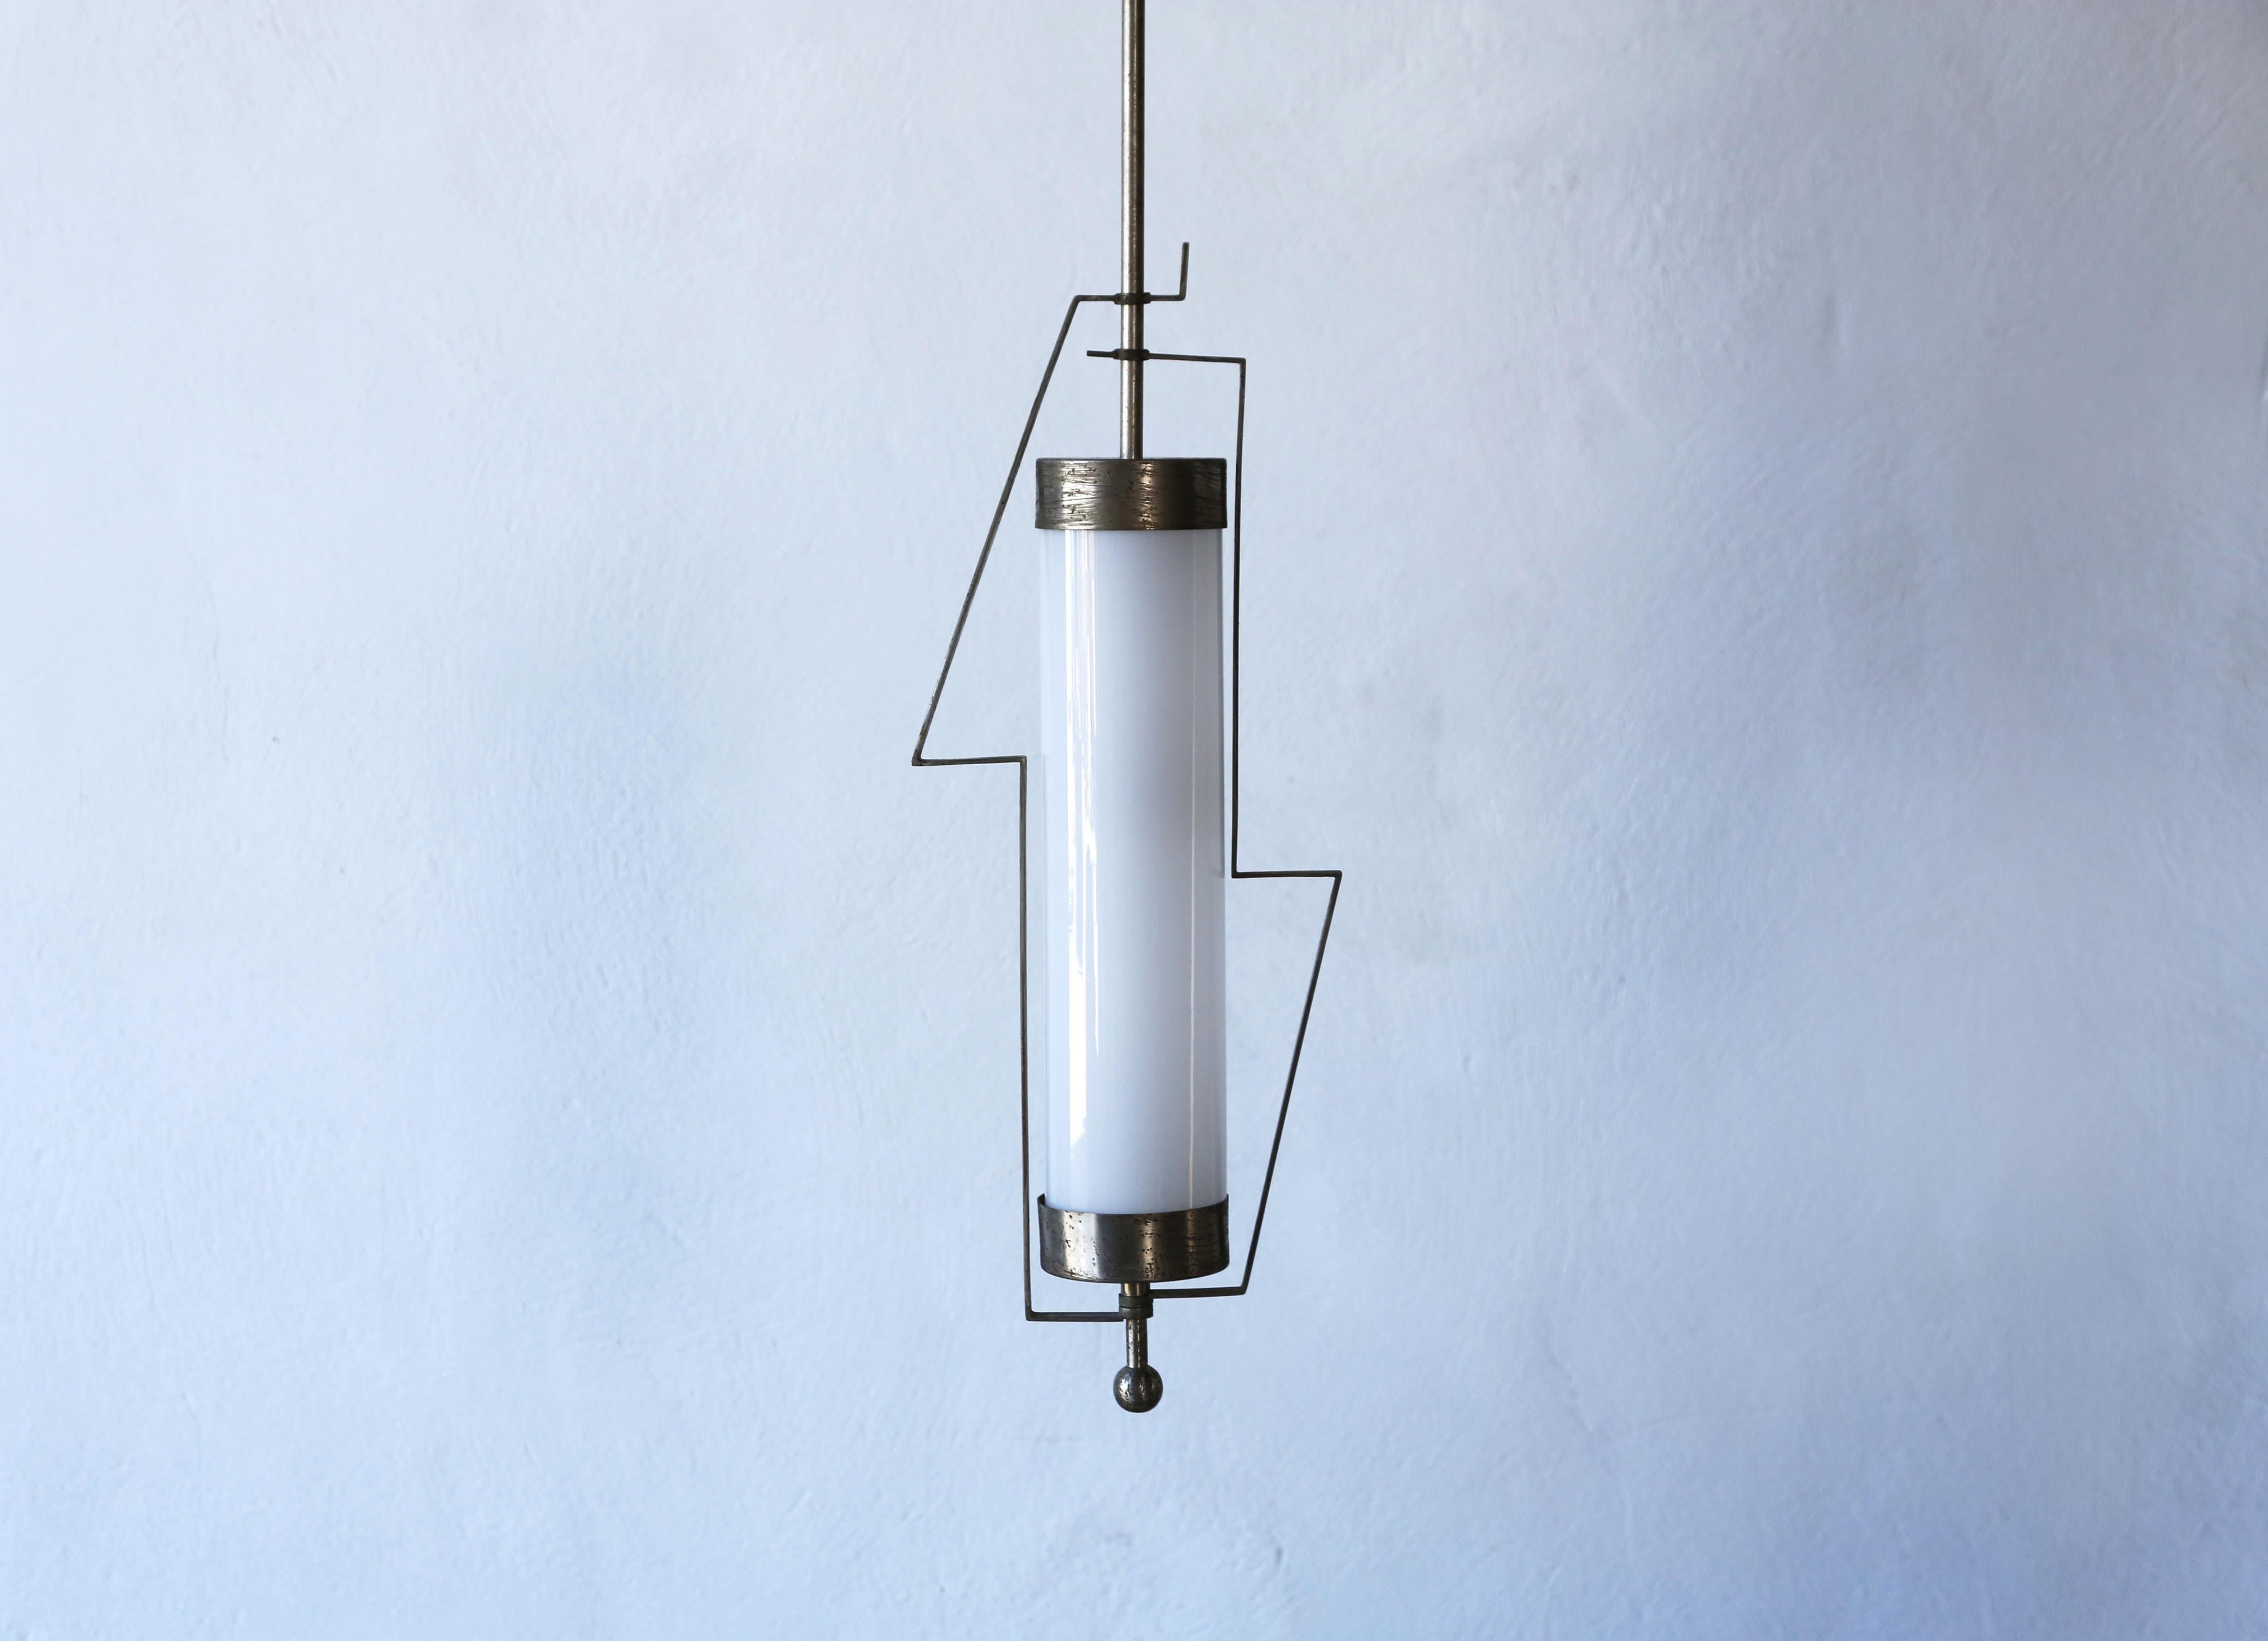 Rare et unique lampe suspendue attribuée à Wiener Werkstatte, Autriche, années 1920. Métal et verre opalin.

La partie principale de la lampe mesure 20 cm de large et 49 cm de haut.
La hauteur de chute est de 144 cm. Nous pouvons ajuster la hauteur